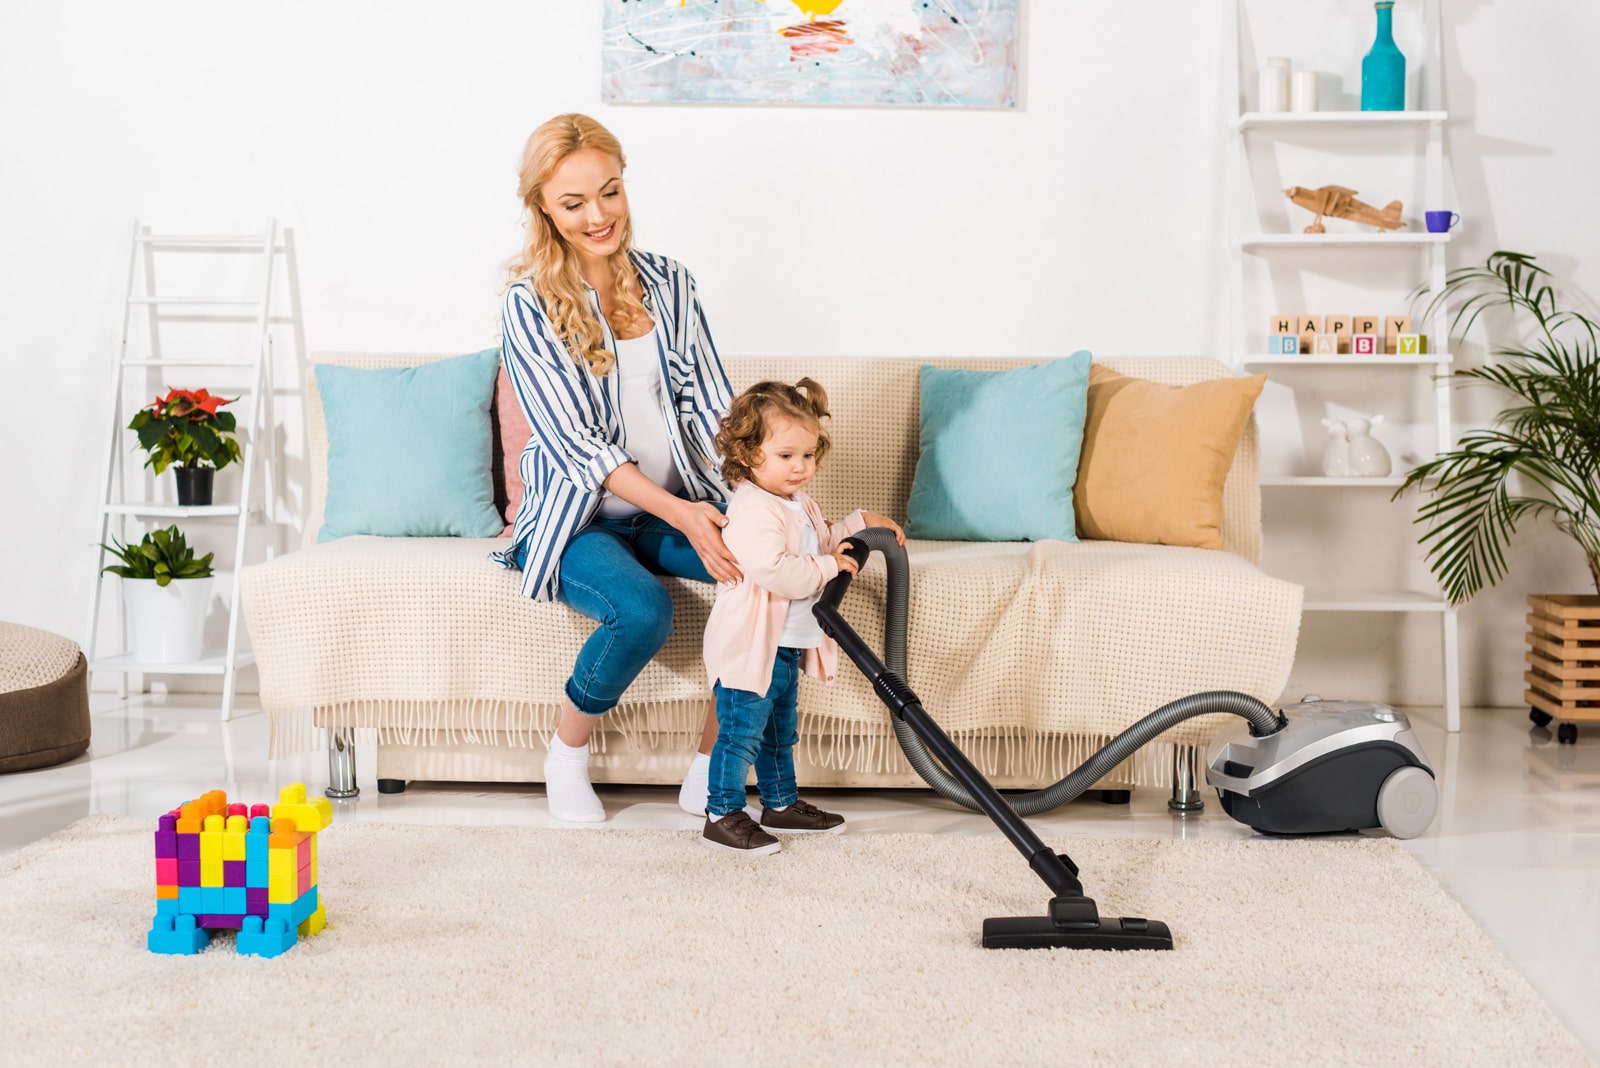 girl vacuuming